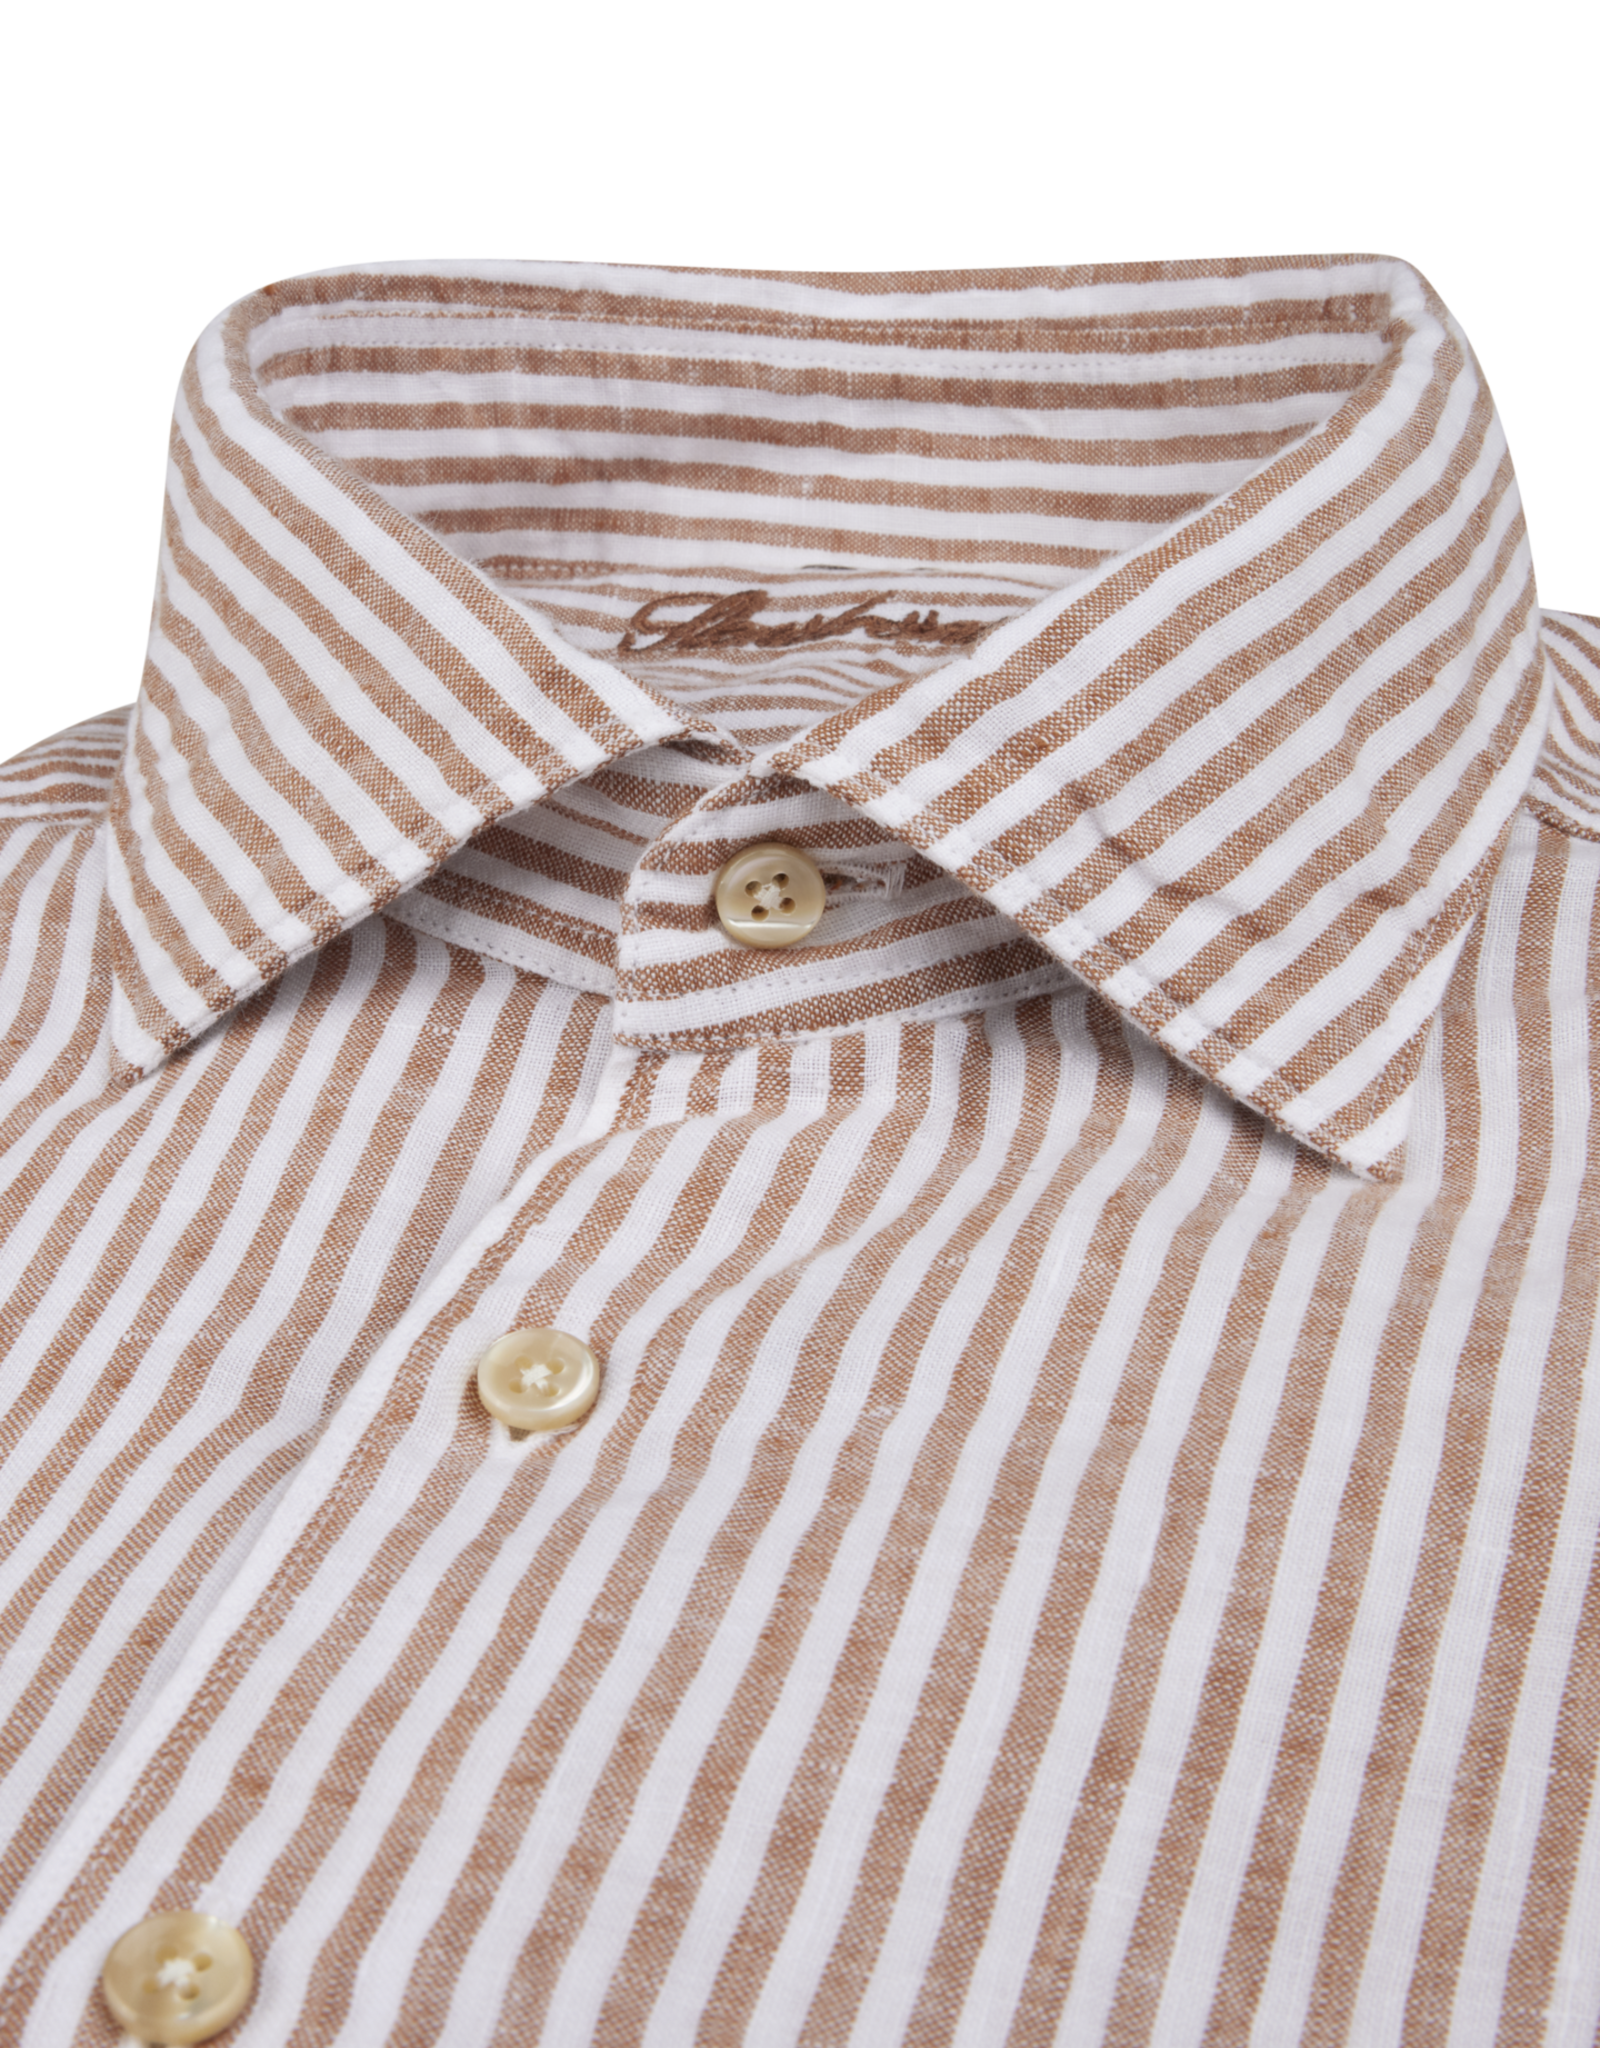 Stenströms Stenströms shirt linen dark orange striped Fitted body 675721-8787/782